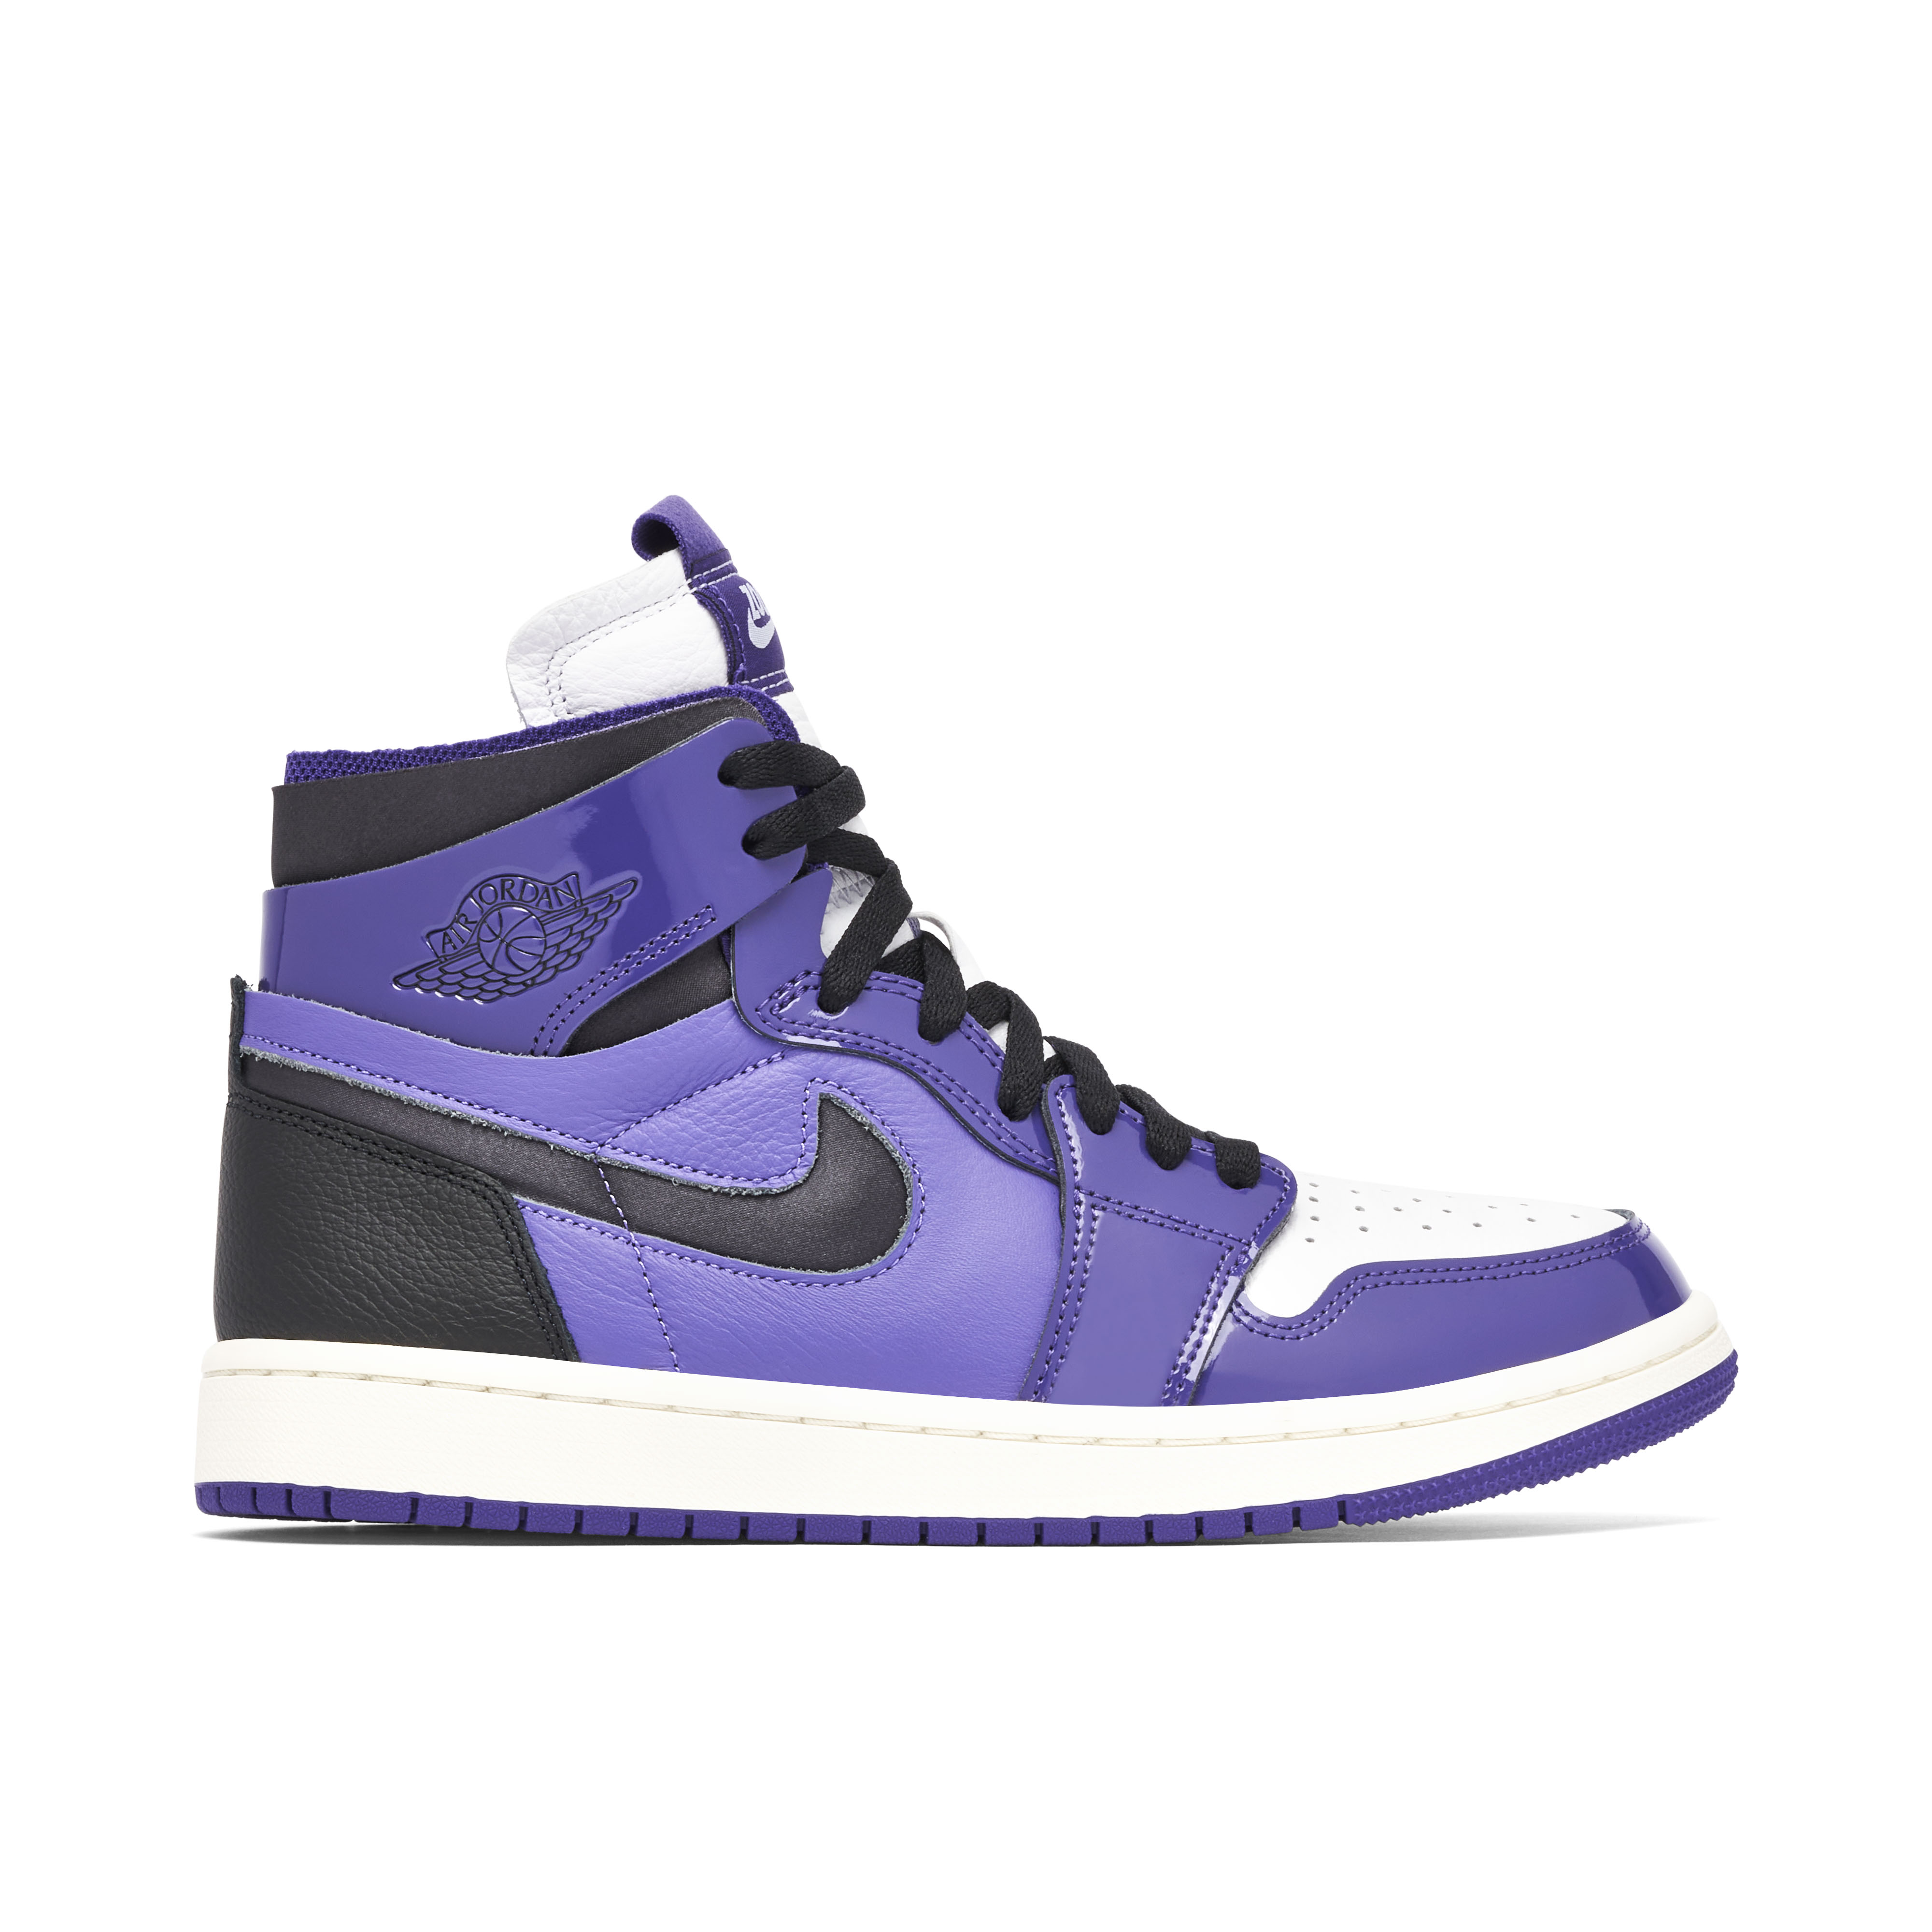 Afgrond Leeds Piraat Purple Jordan 1 Trainers | Online Air Jordan Sneakers | Laced